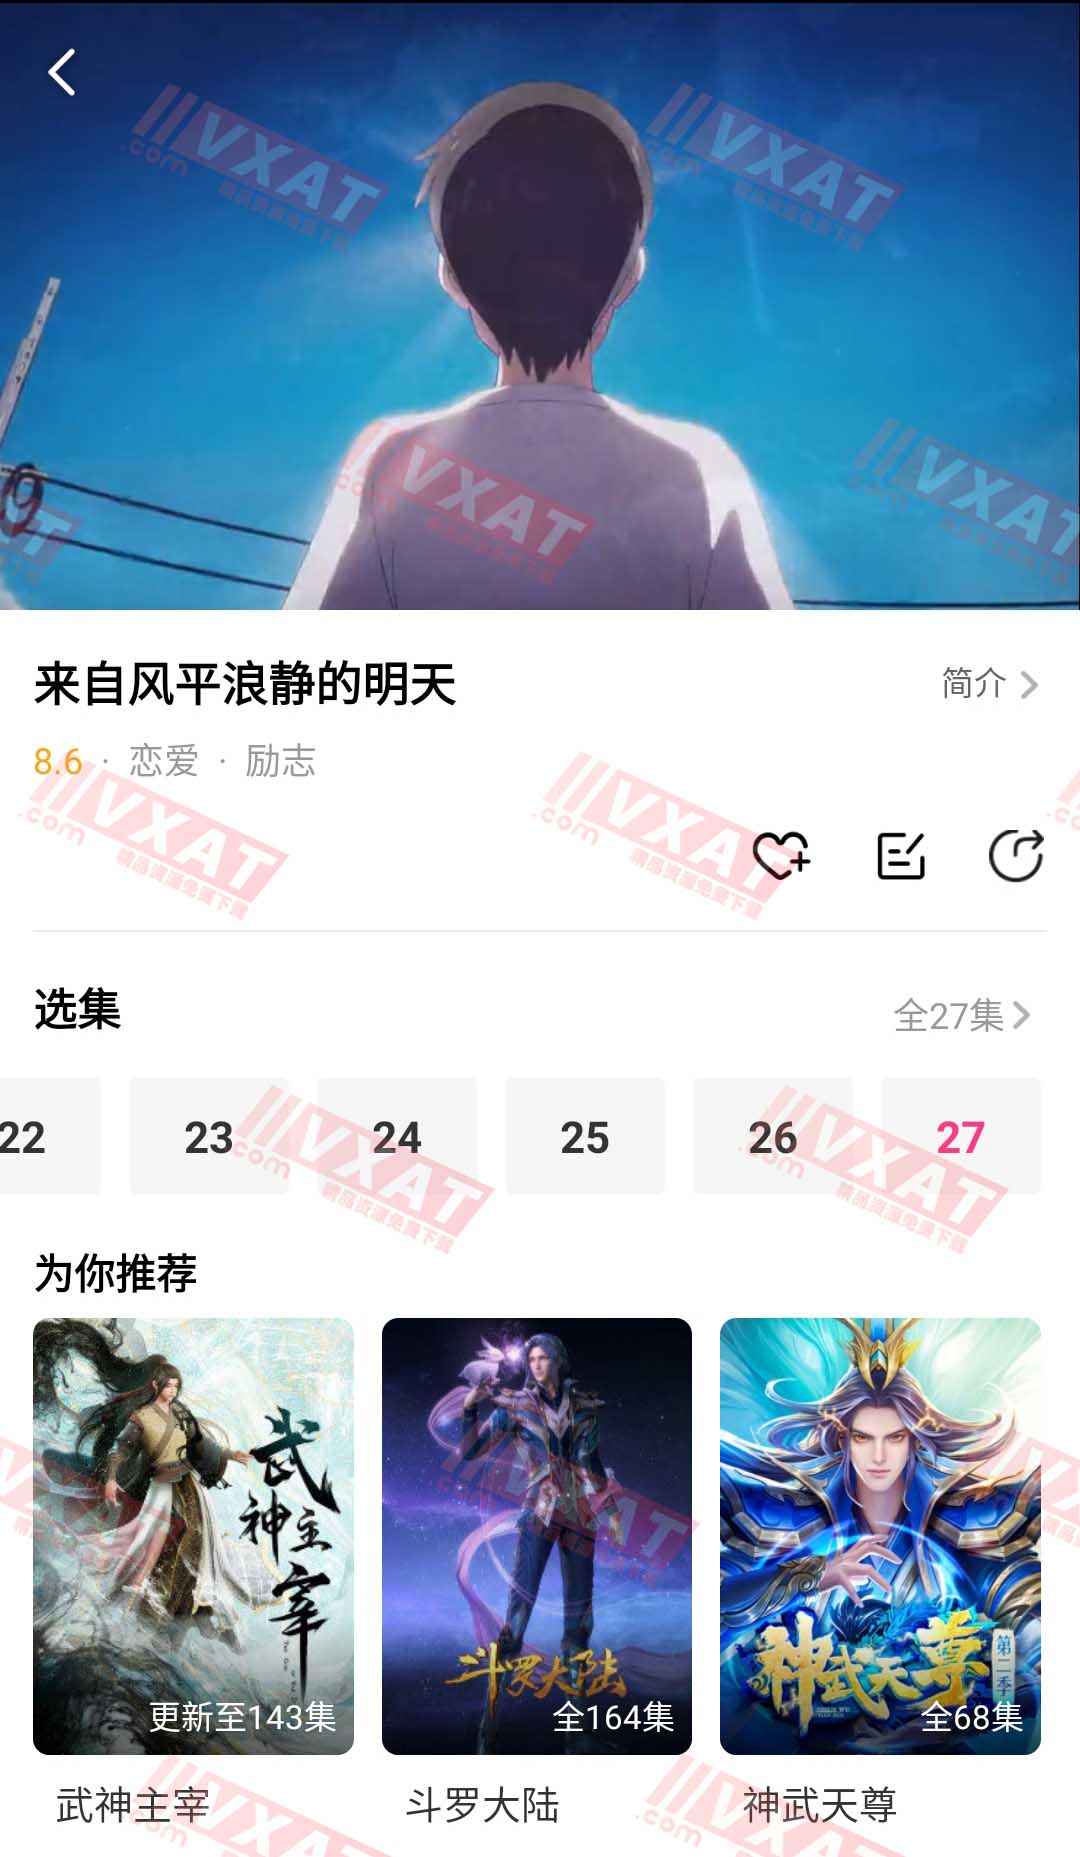 荔枝动漫 v10.0.3 去广告版 第2张